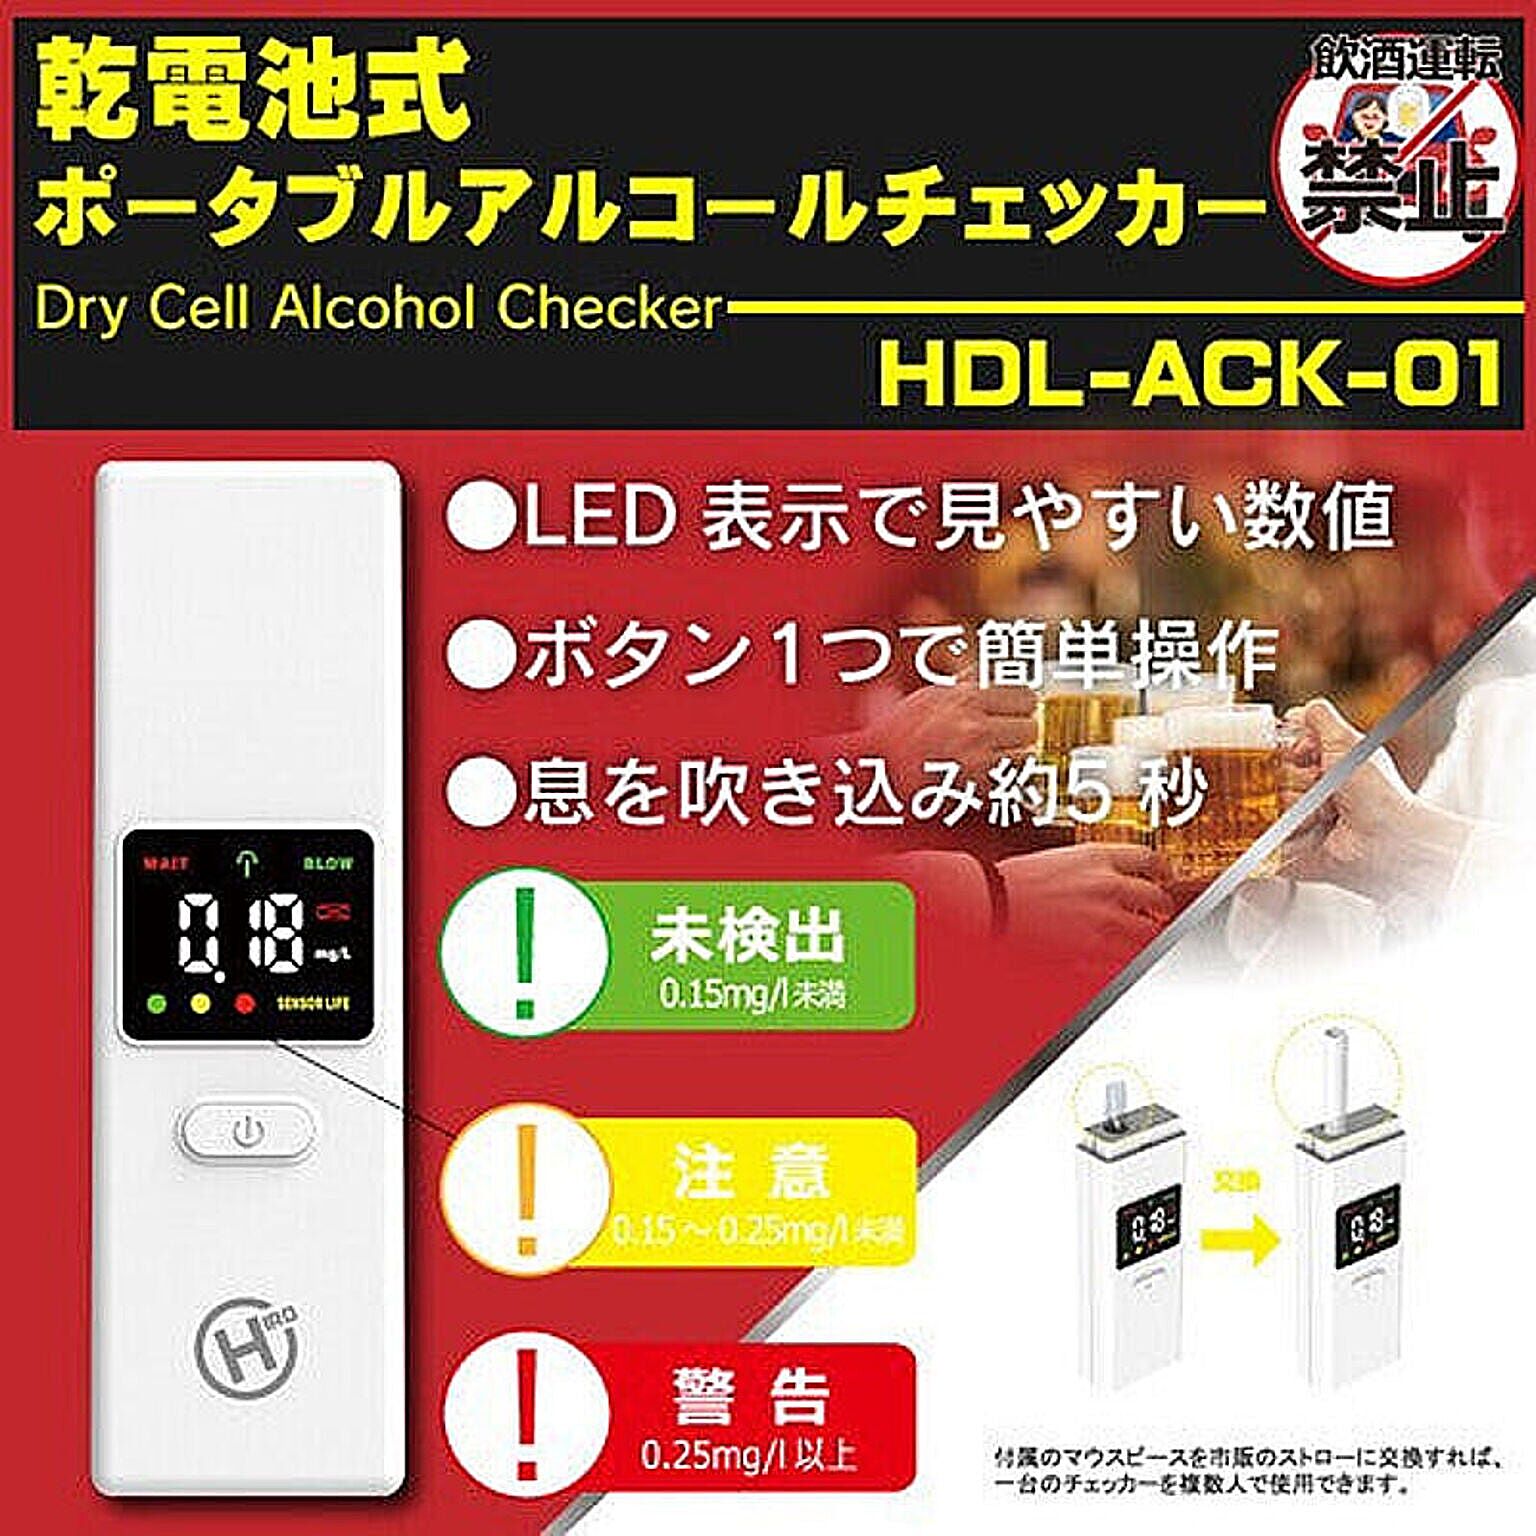 乾電池式ポータブルアルコールチェッカー ヒロコーポレーション HDL-ACK-01 ポータブル アルコールチェッカー 電池式 ストロー対応 管理No. 4562350985865